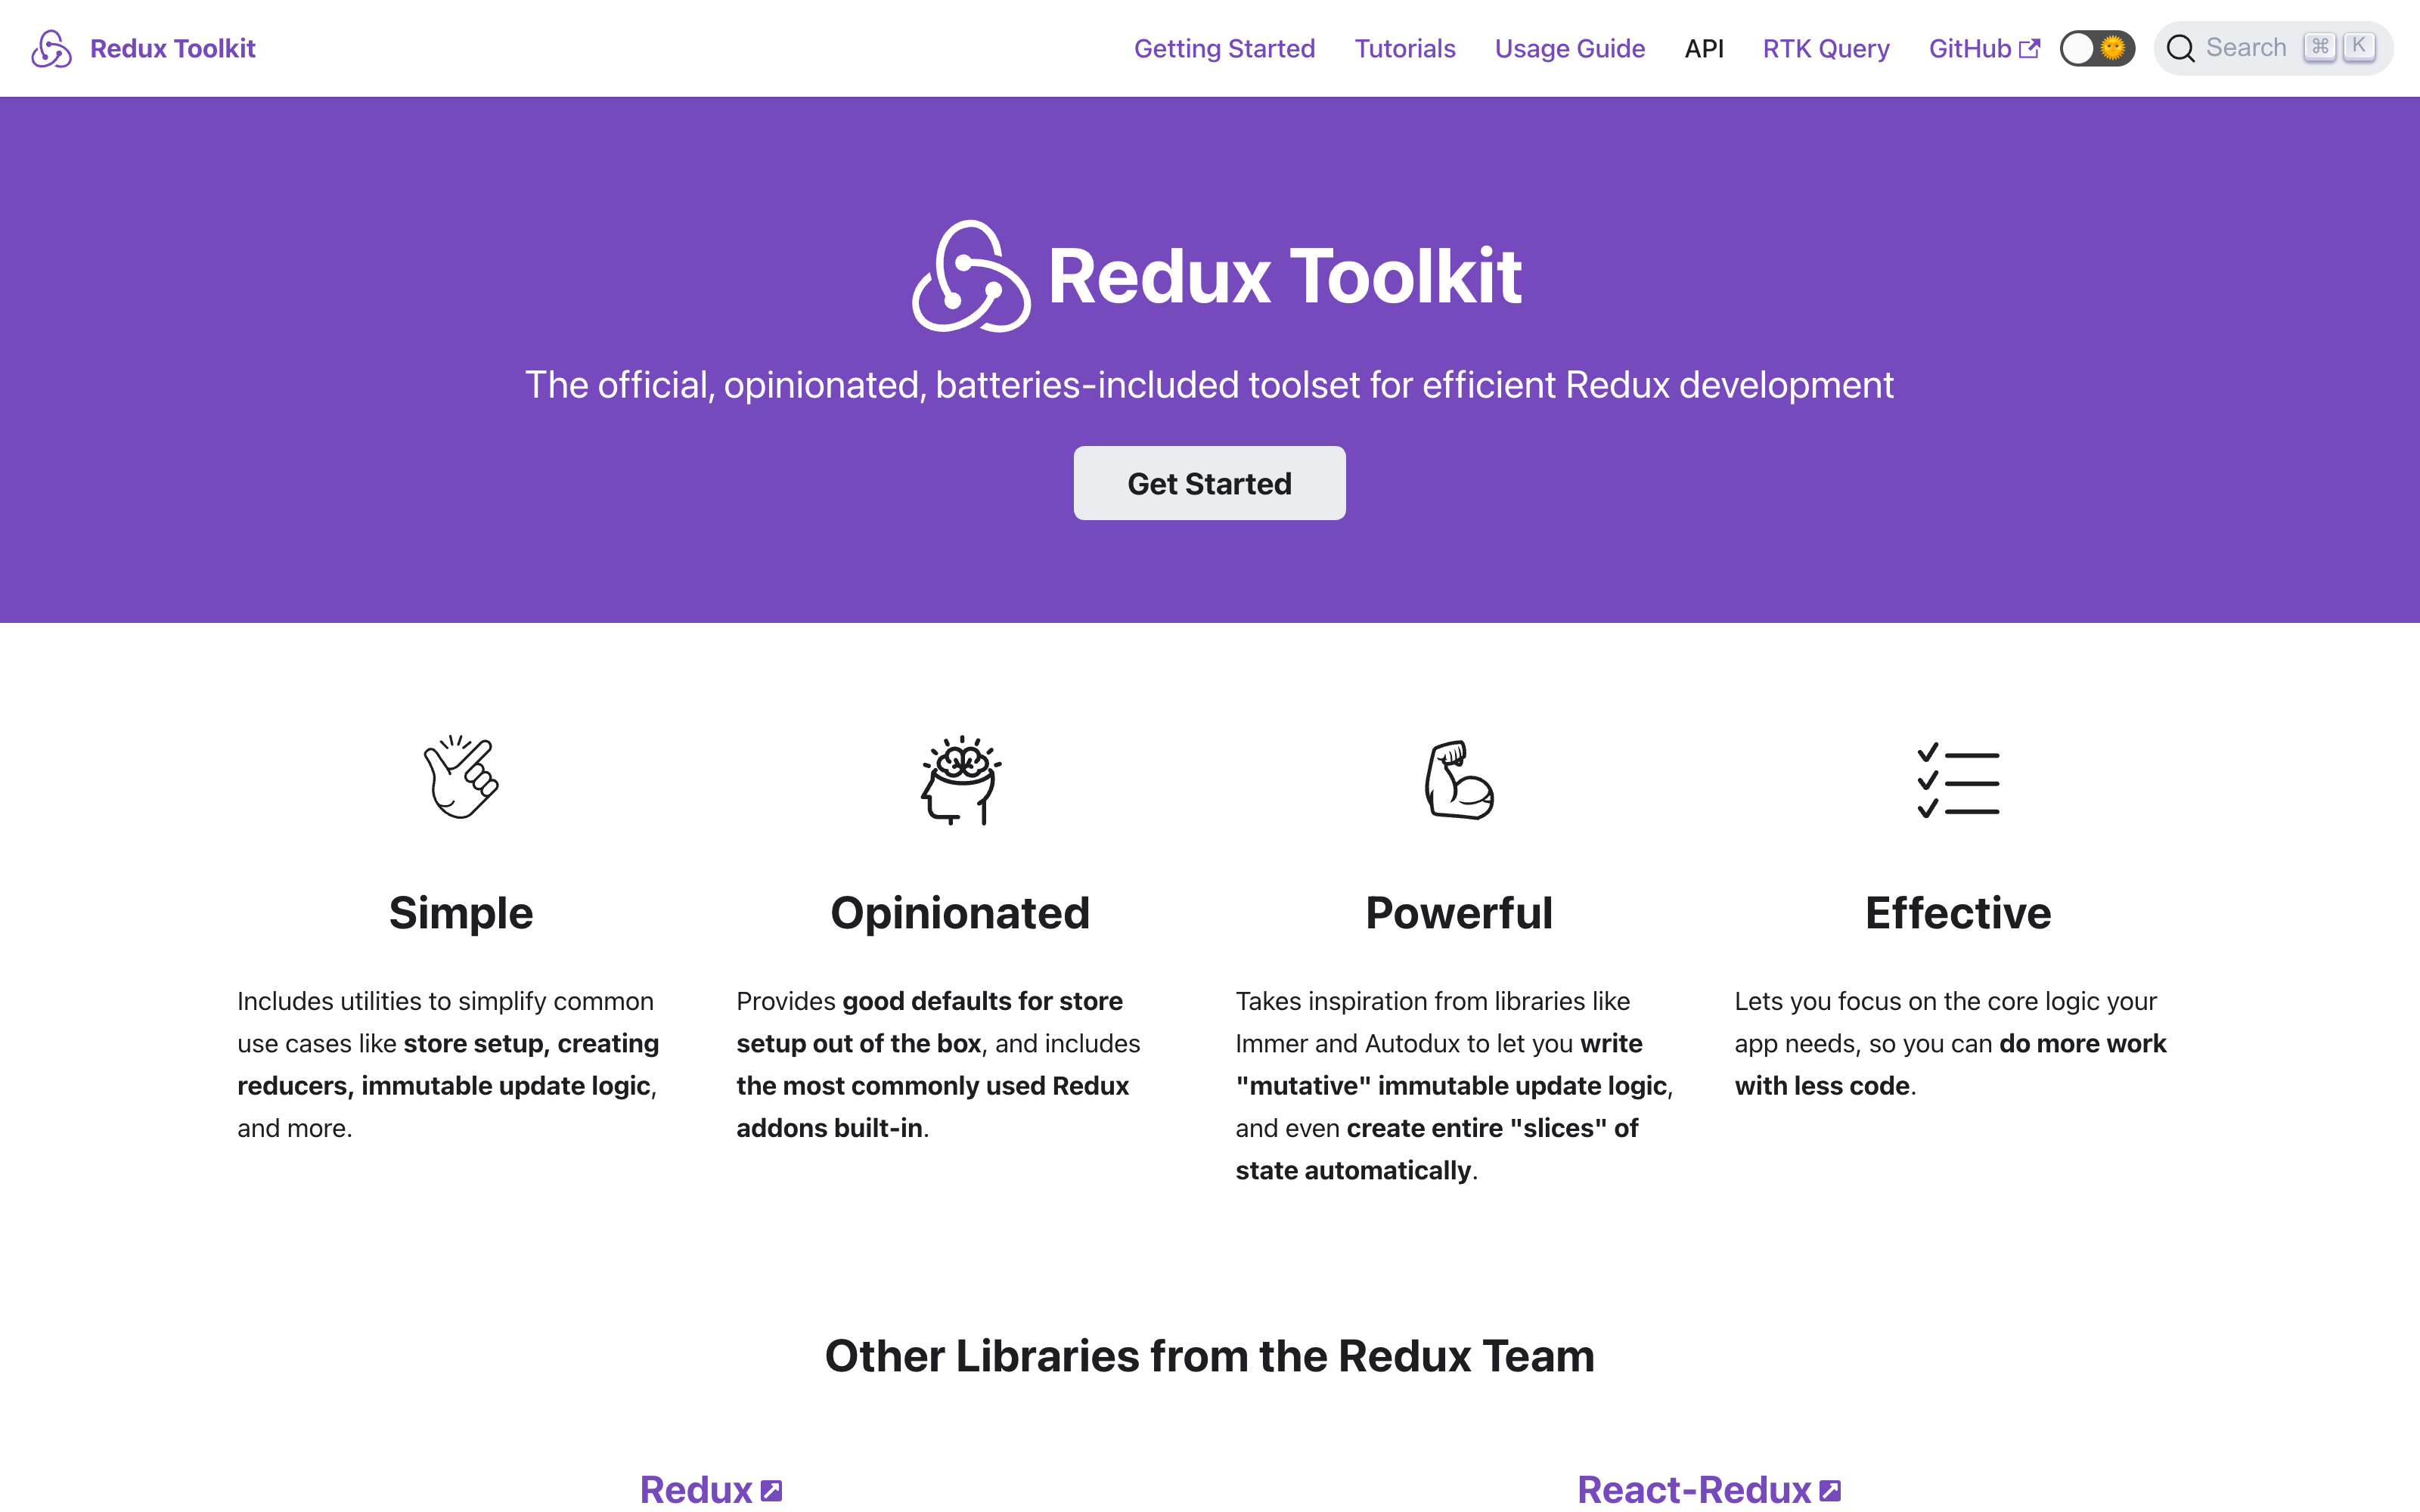 Redux Toolkit landing page